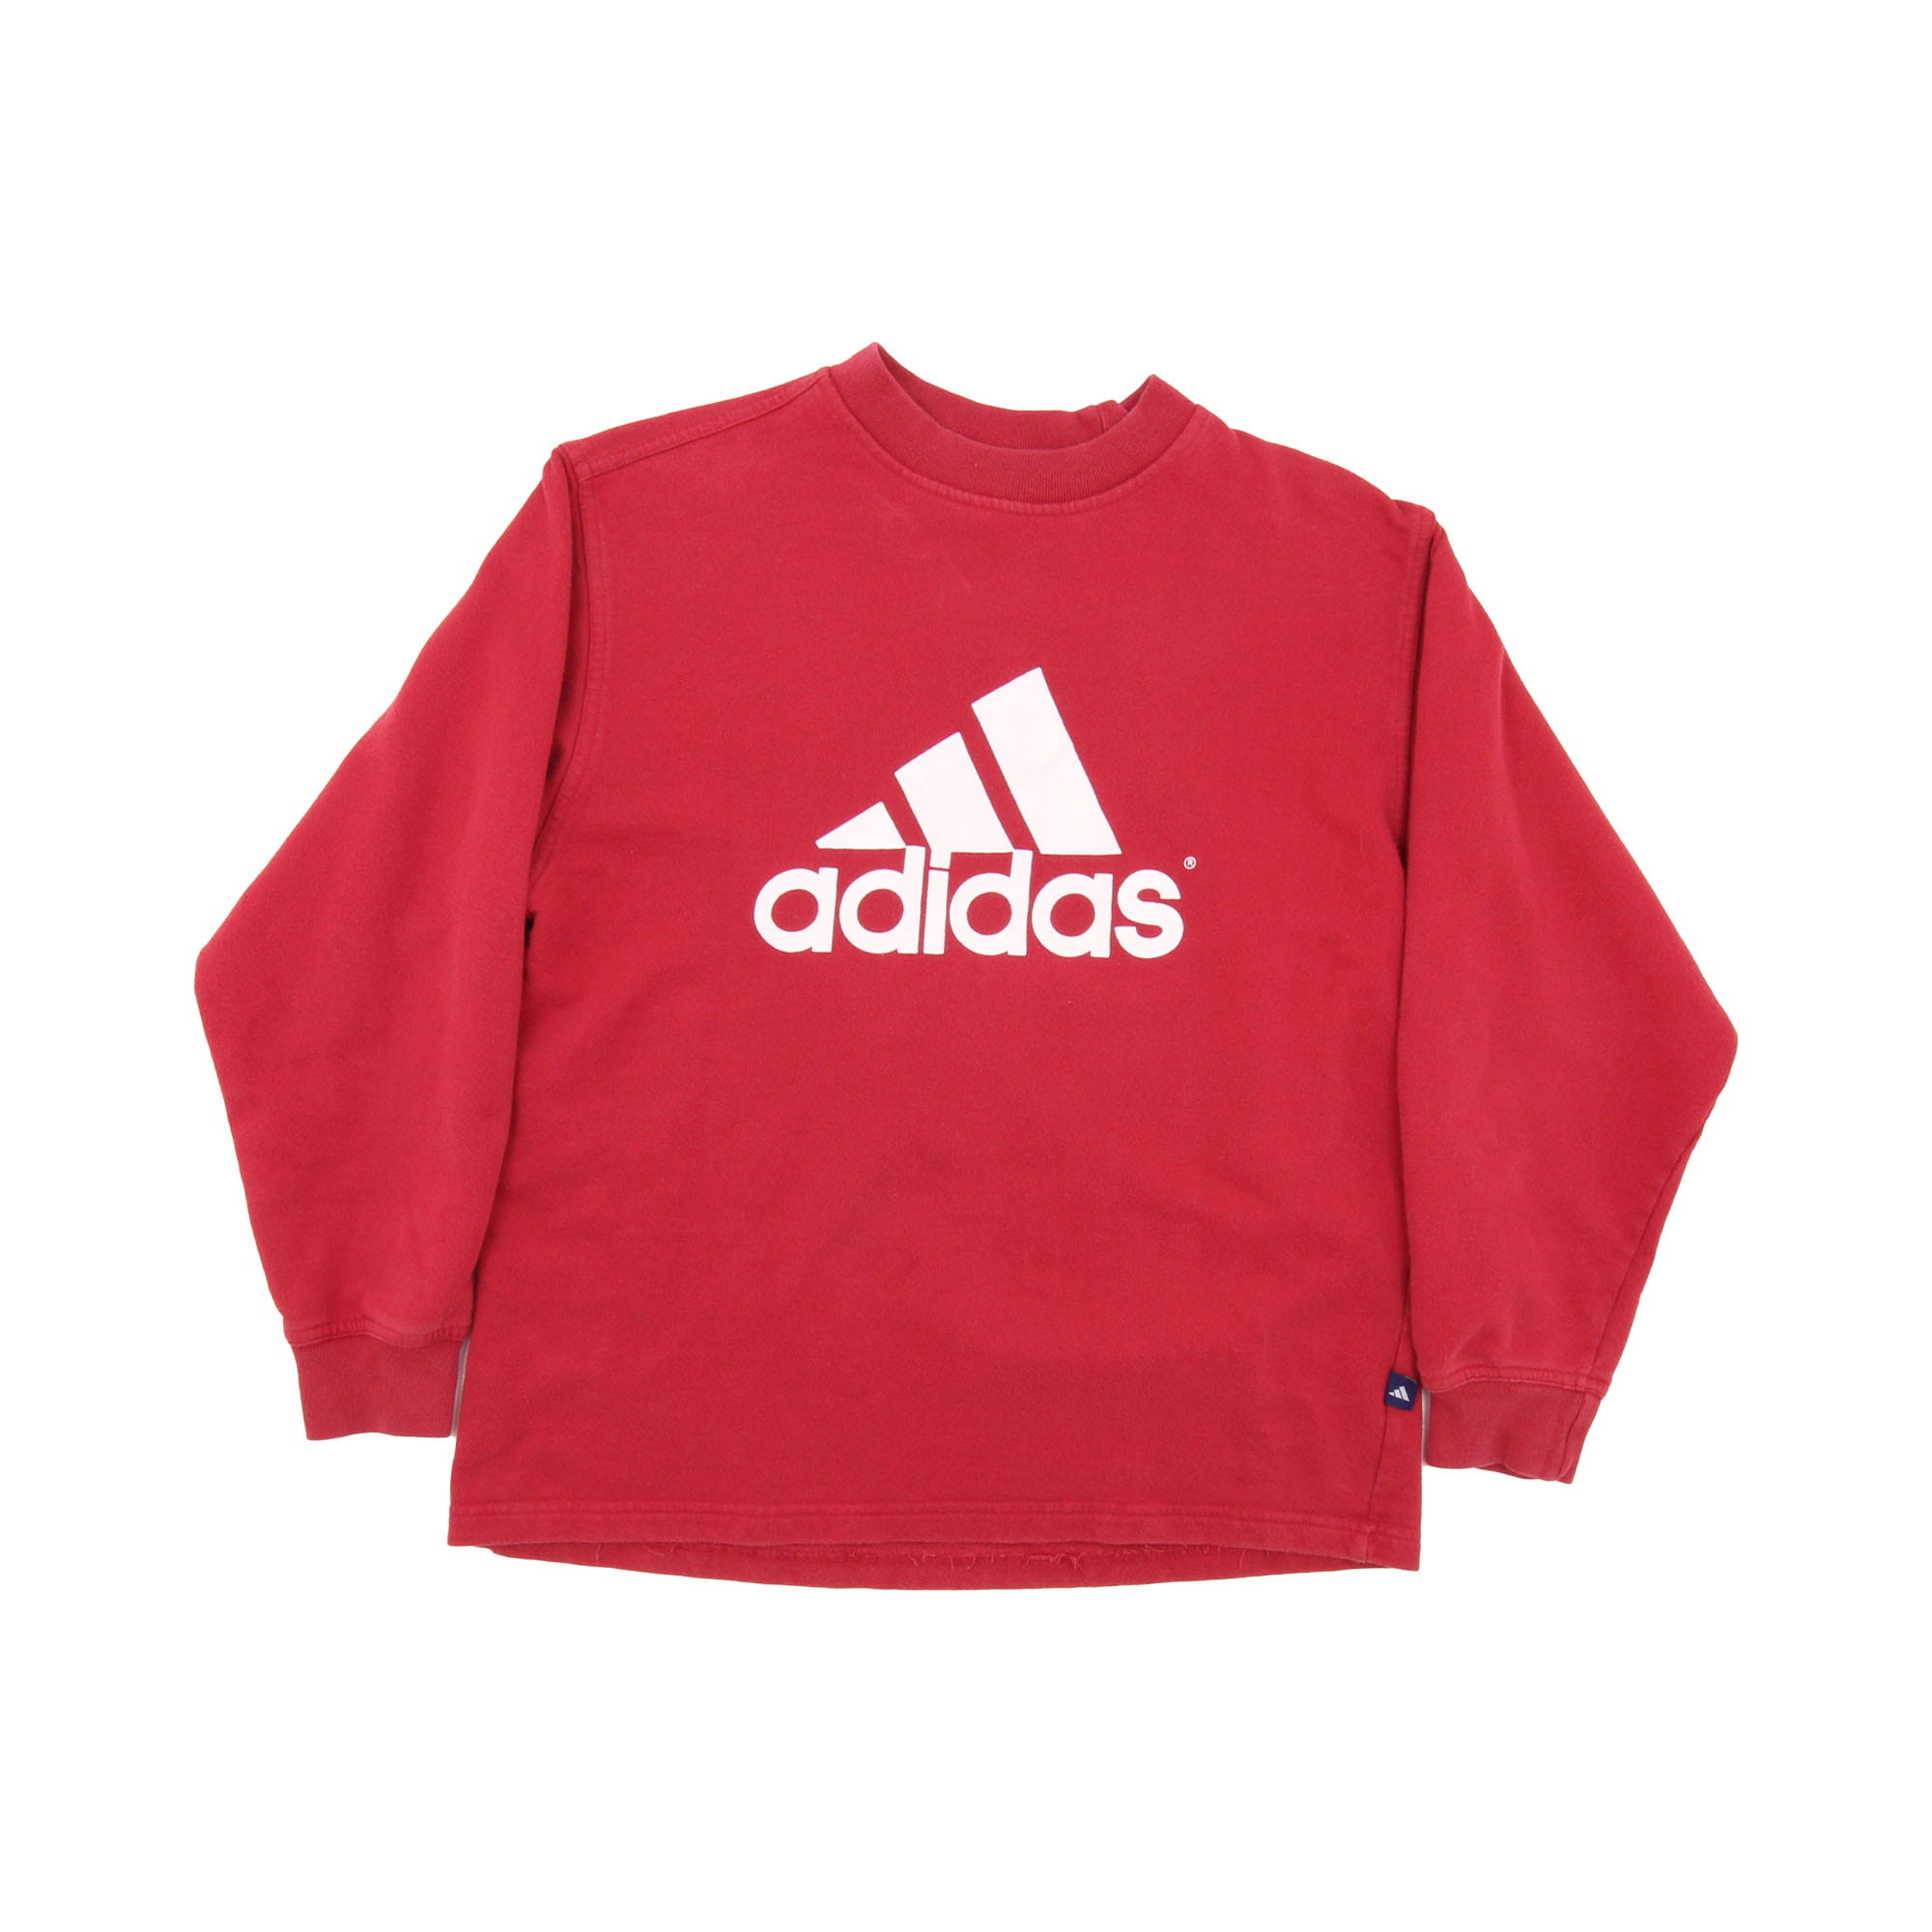 Adidas Printed Logo Sweatshirt -  M/L